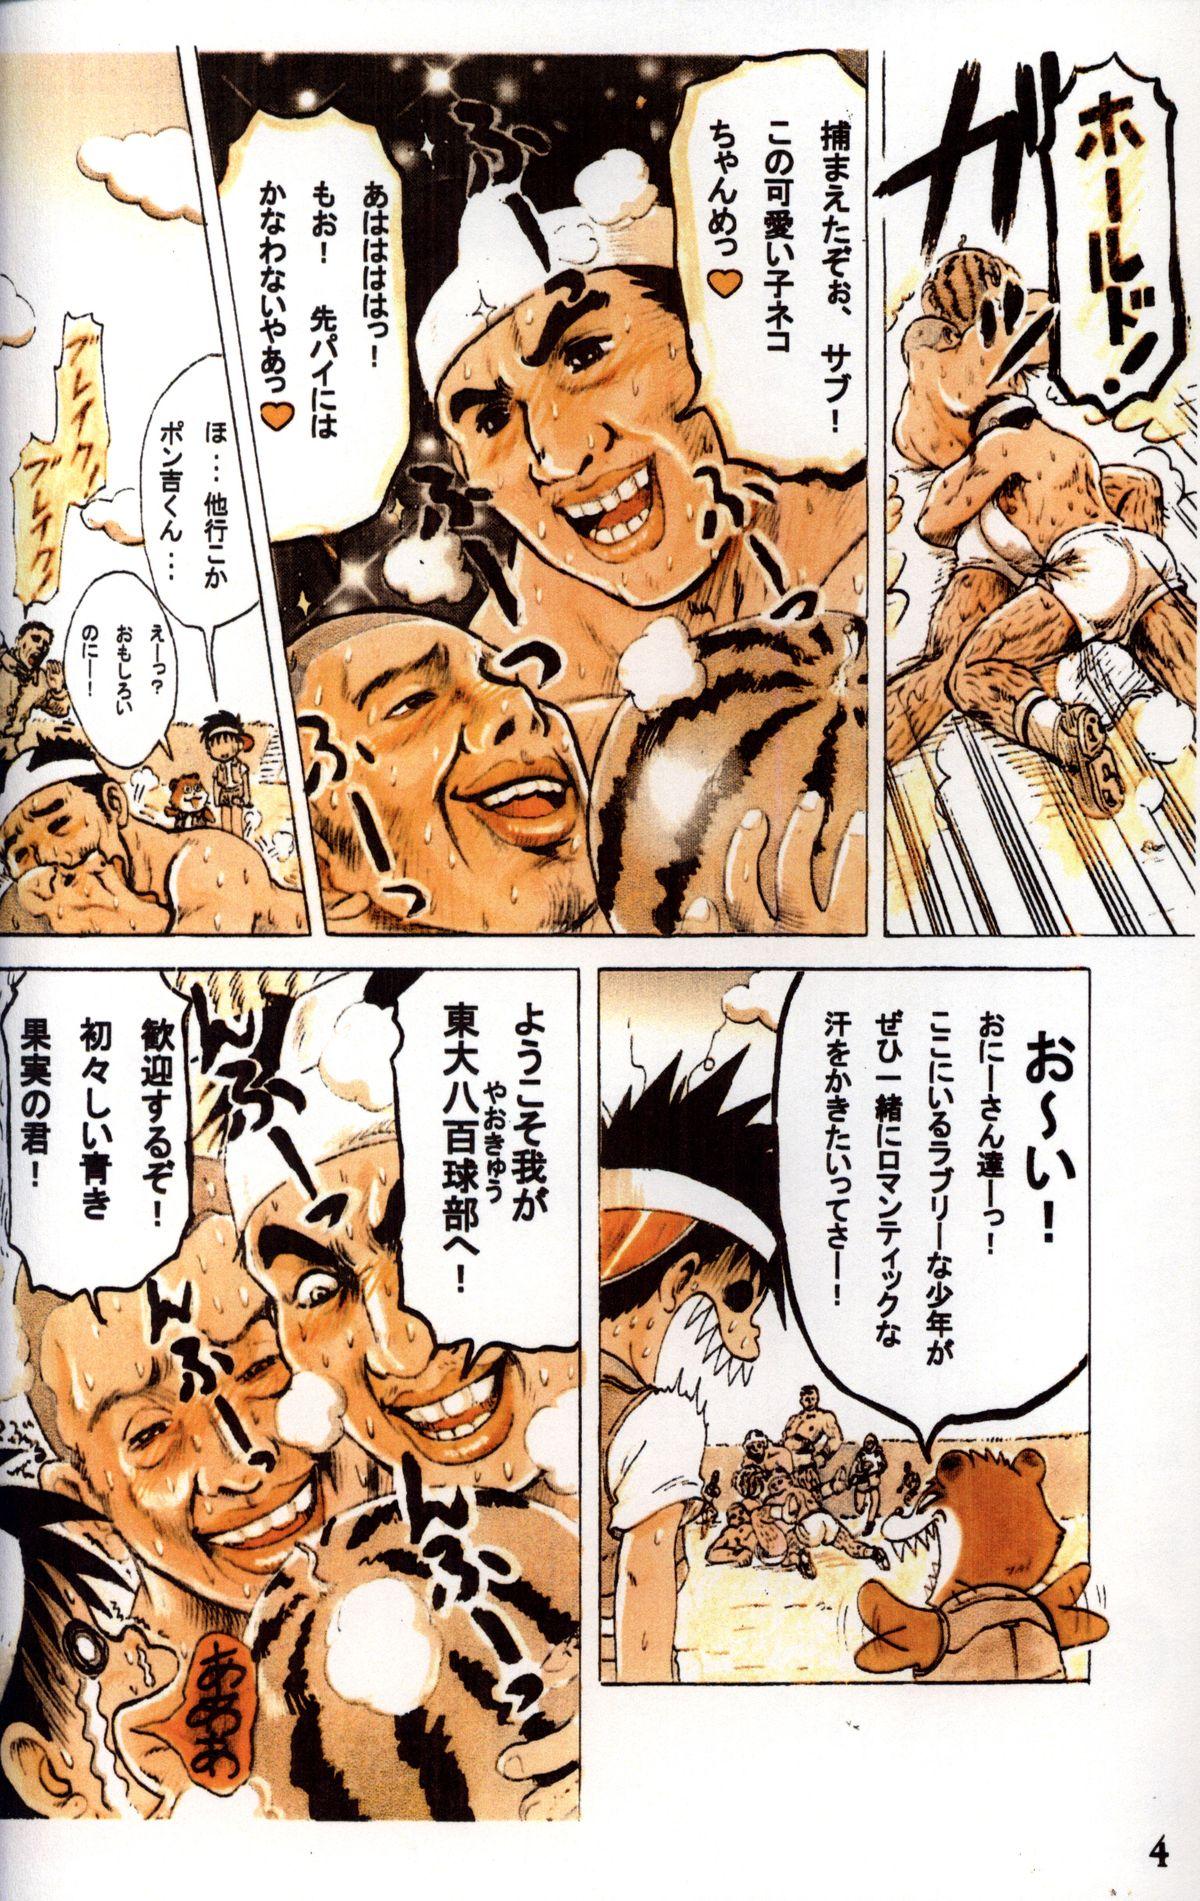 Blows Mitsui Jun - Tanken! Boku no Machi Movies - Page 4